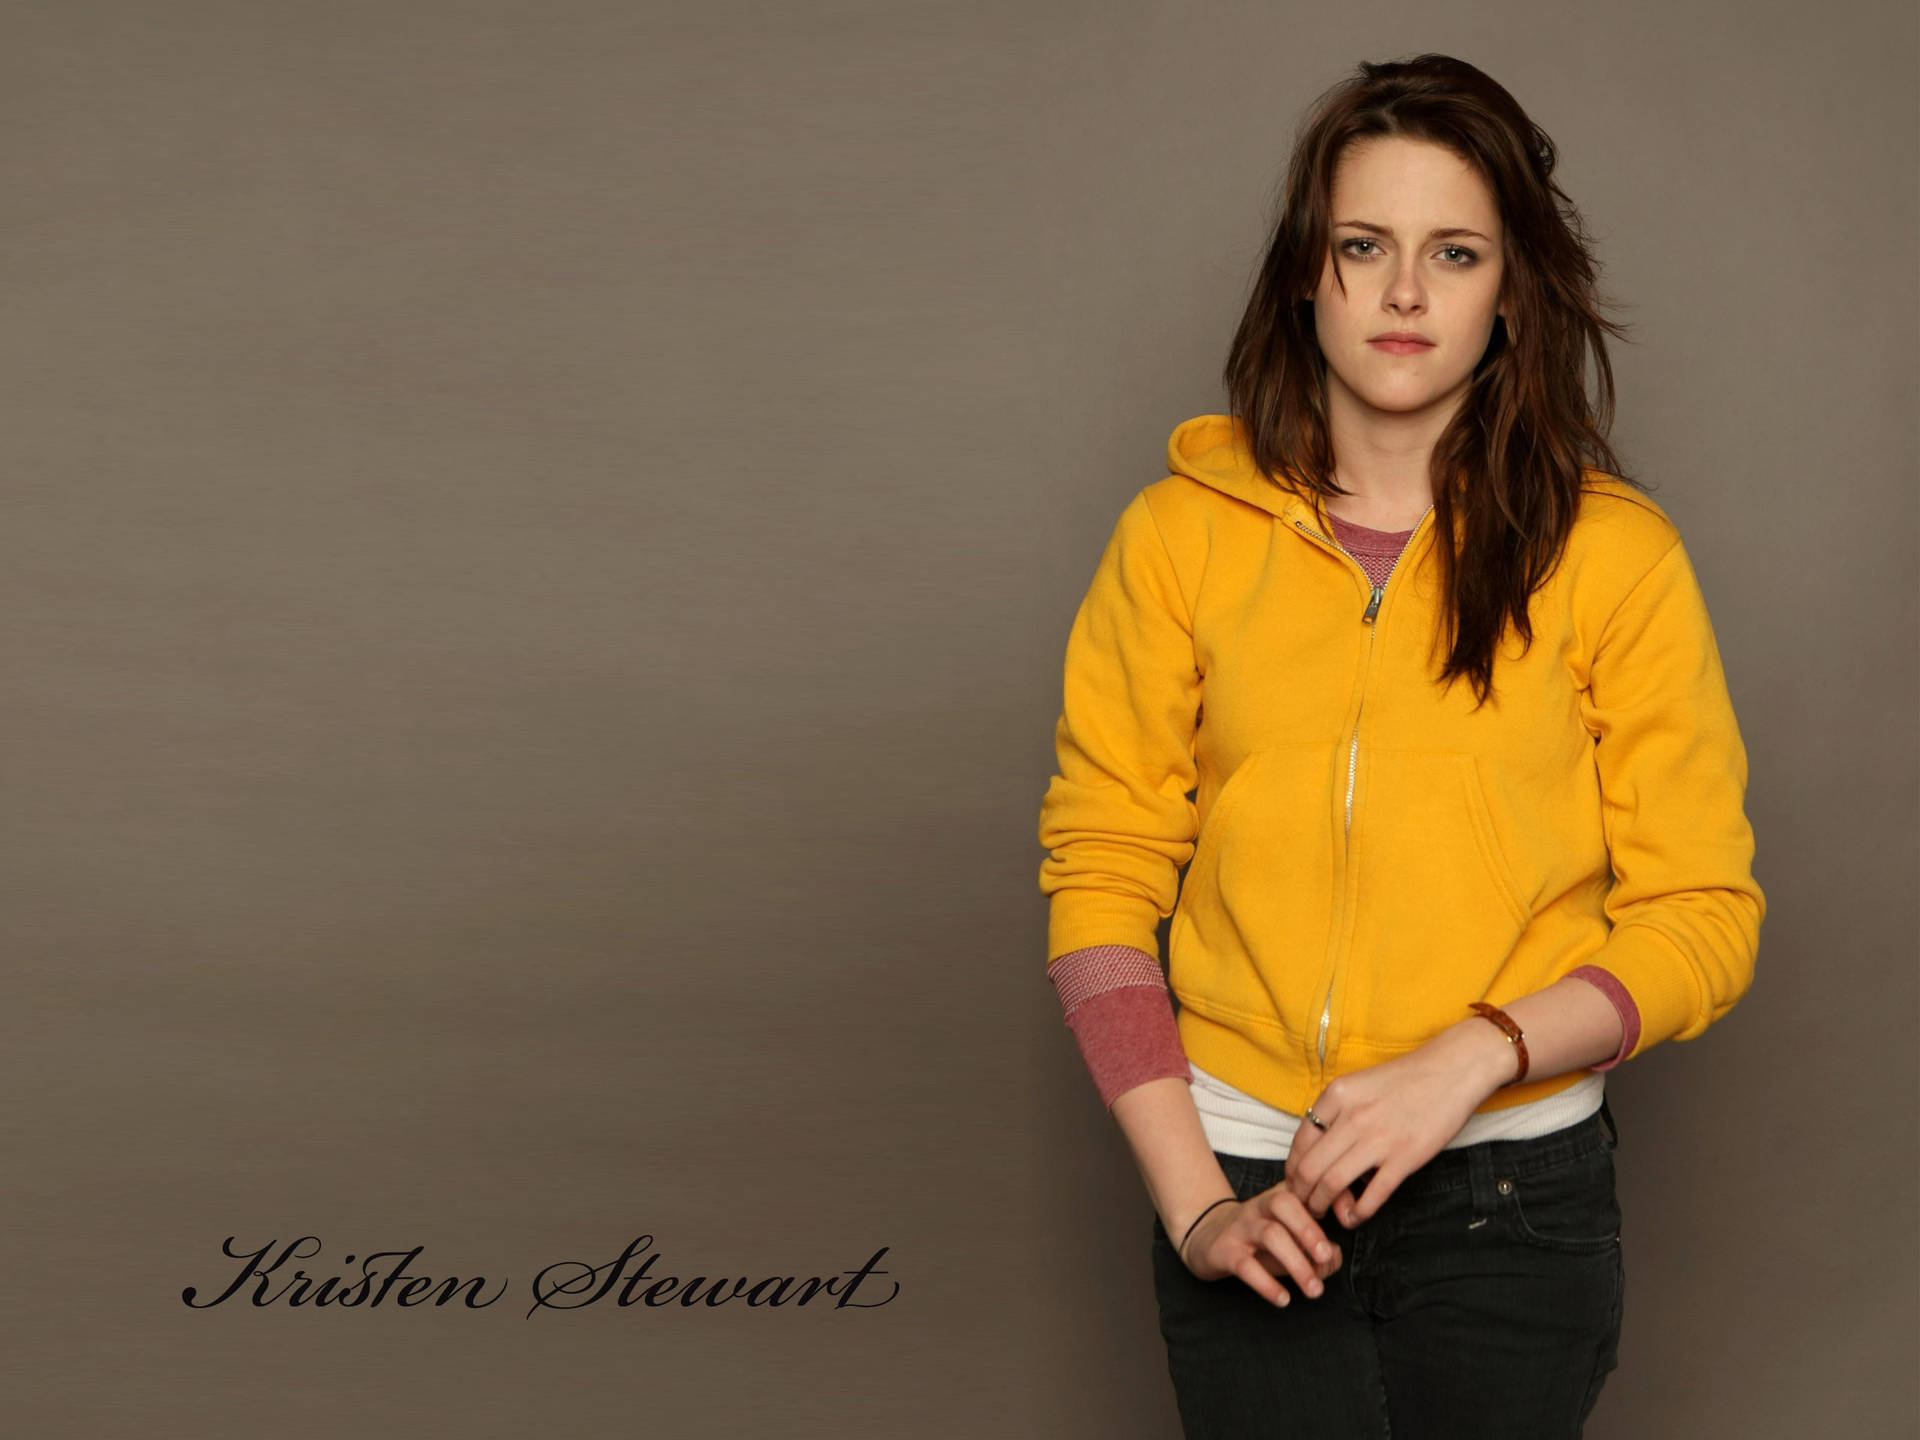 Kristen Stewart Yellow Sweatshirt Background